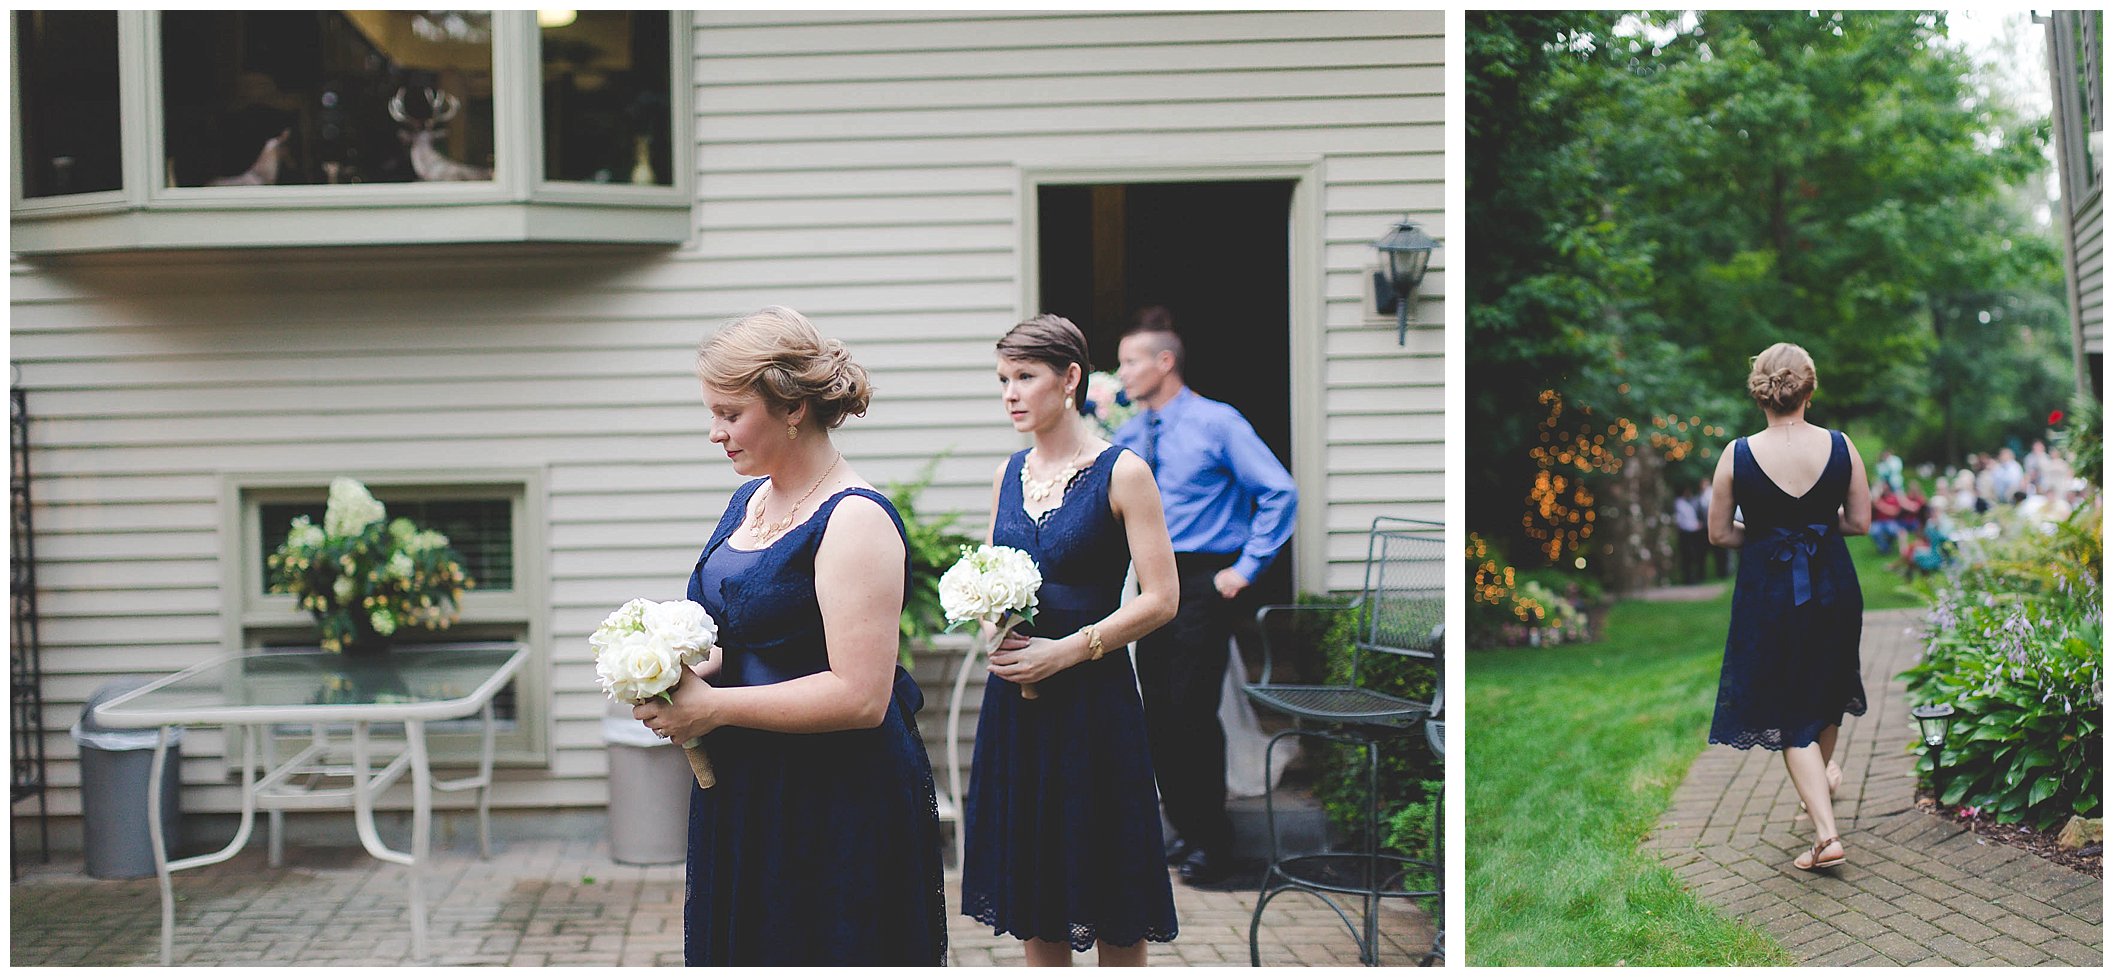 Stunning backyard wedding with twinkly lights, Fort Wayne Indiana Wedding Photographer_0008.jpg